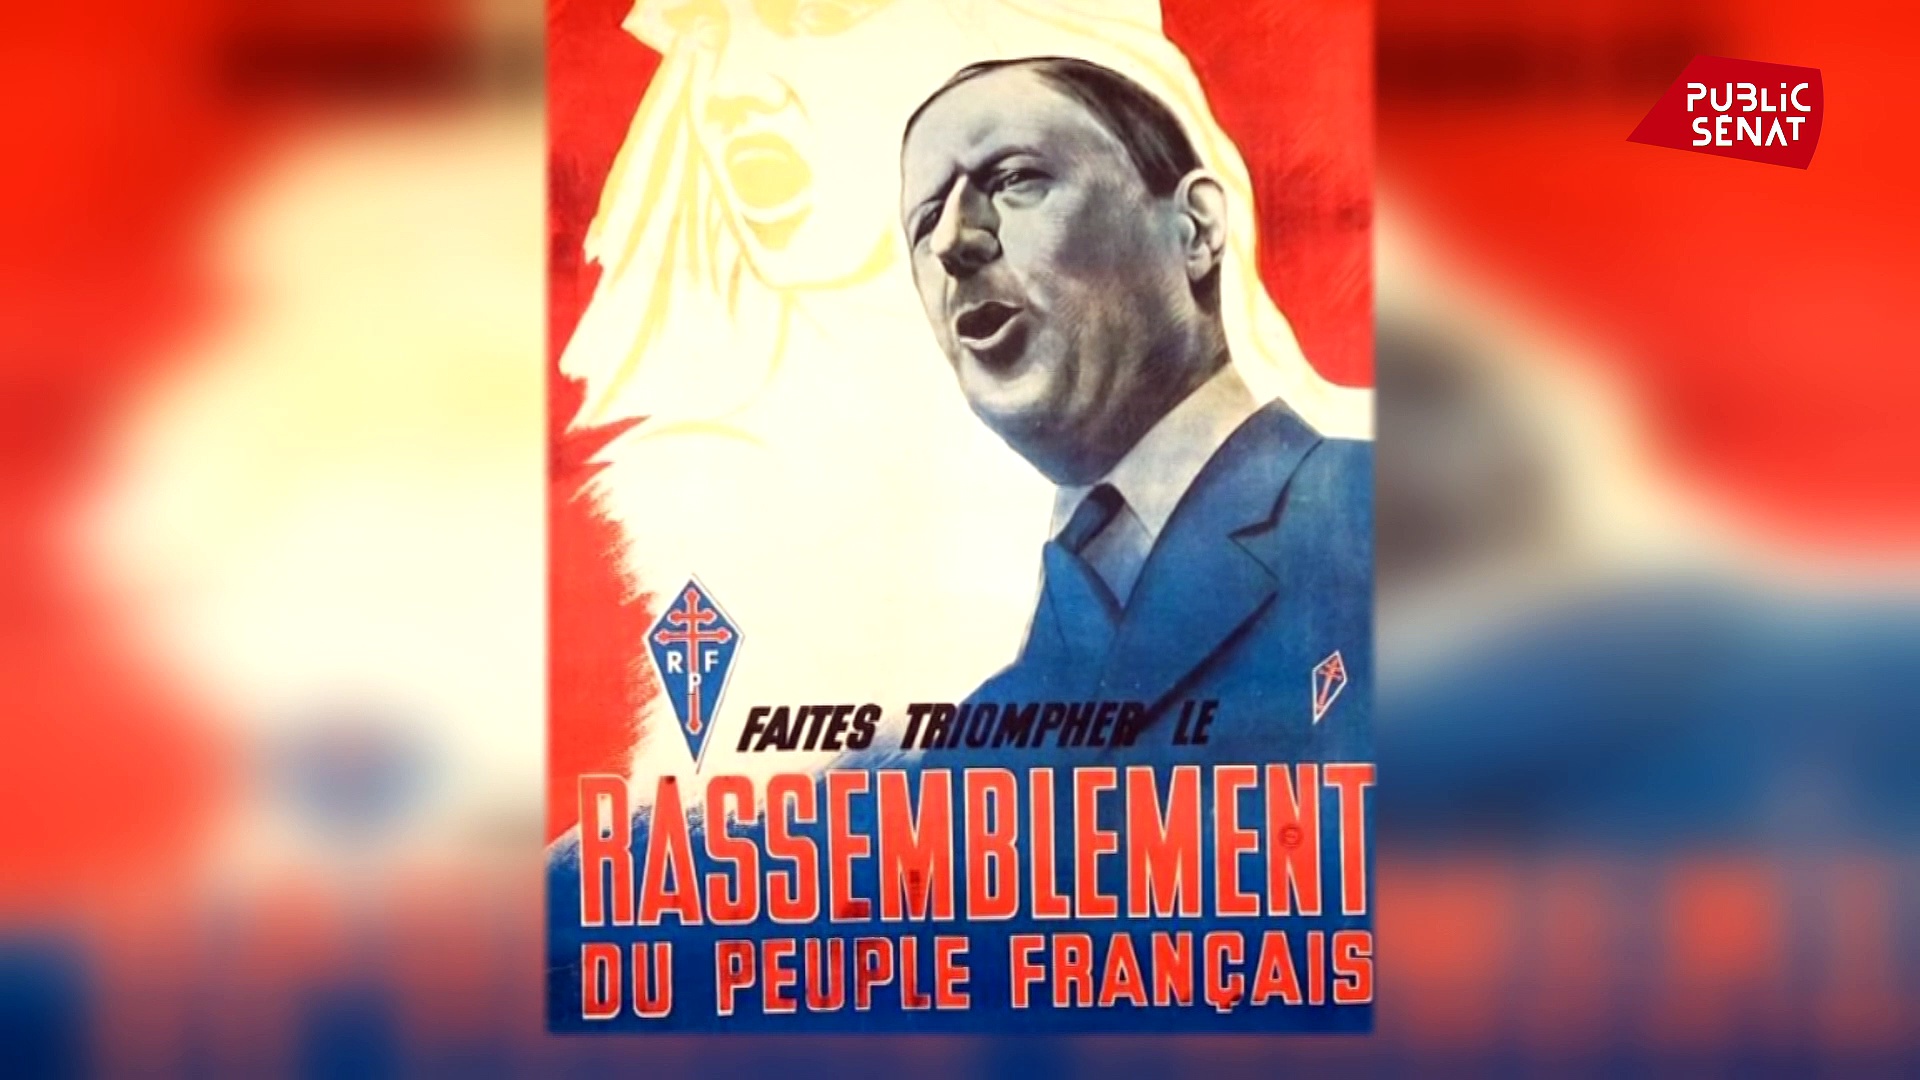 Documentaire De Gaulle, le monarque et le Parlement